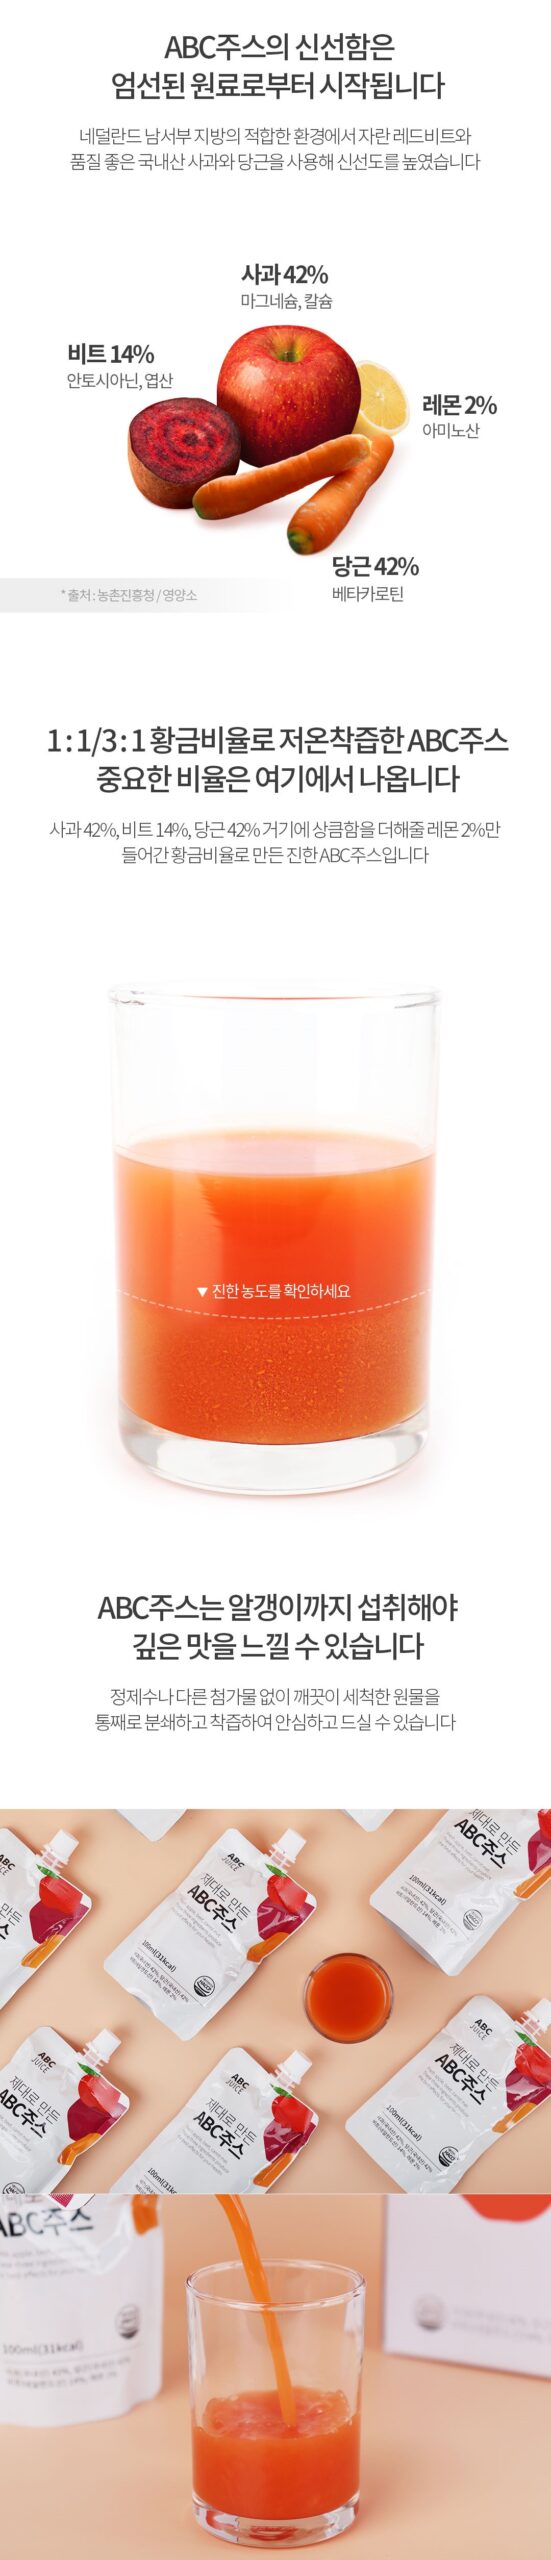 韓國食品-[Kim Jae Sik Health Food] ABC果汁 100ml*30